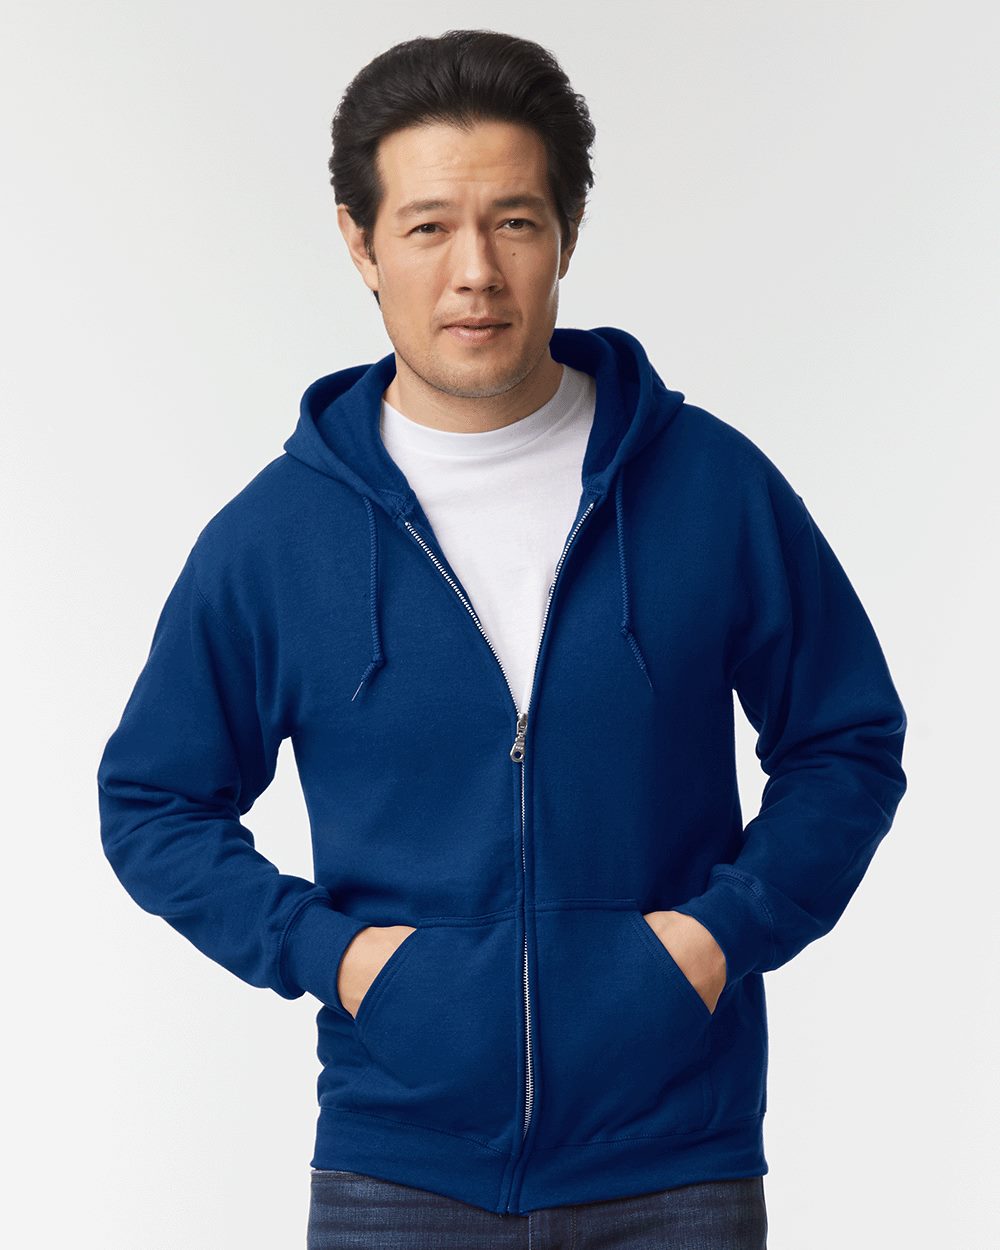 Artix - Men's Sweatshirt Full-Zip Pullover - St. Louis - image 5 of 5